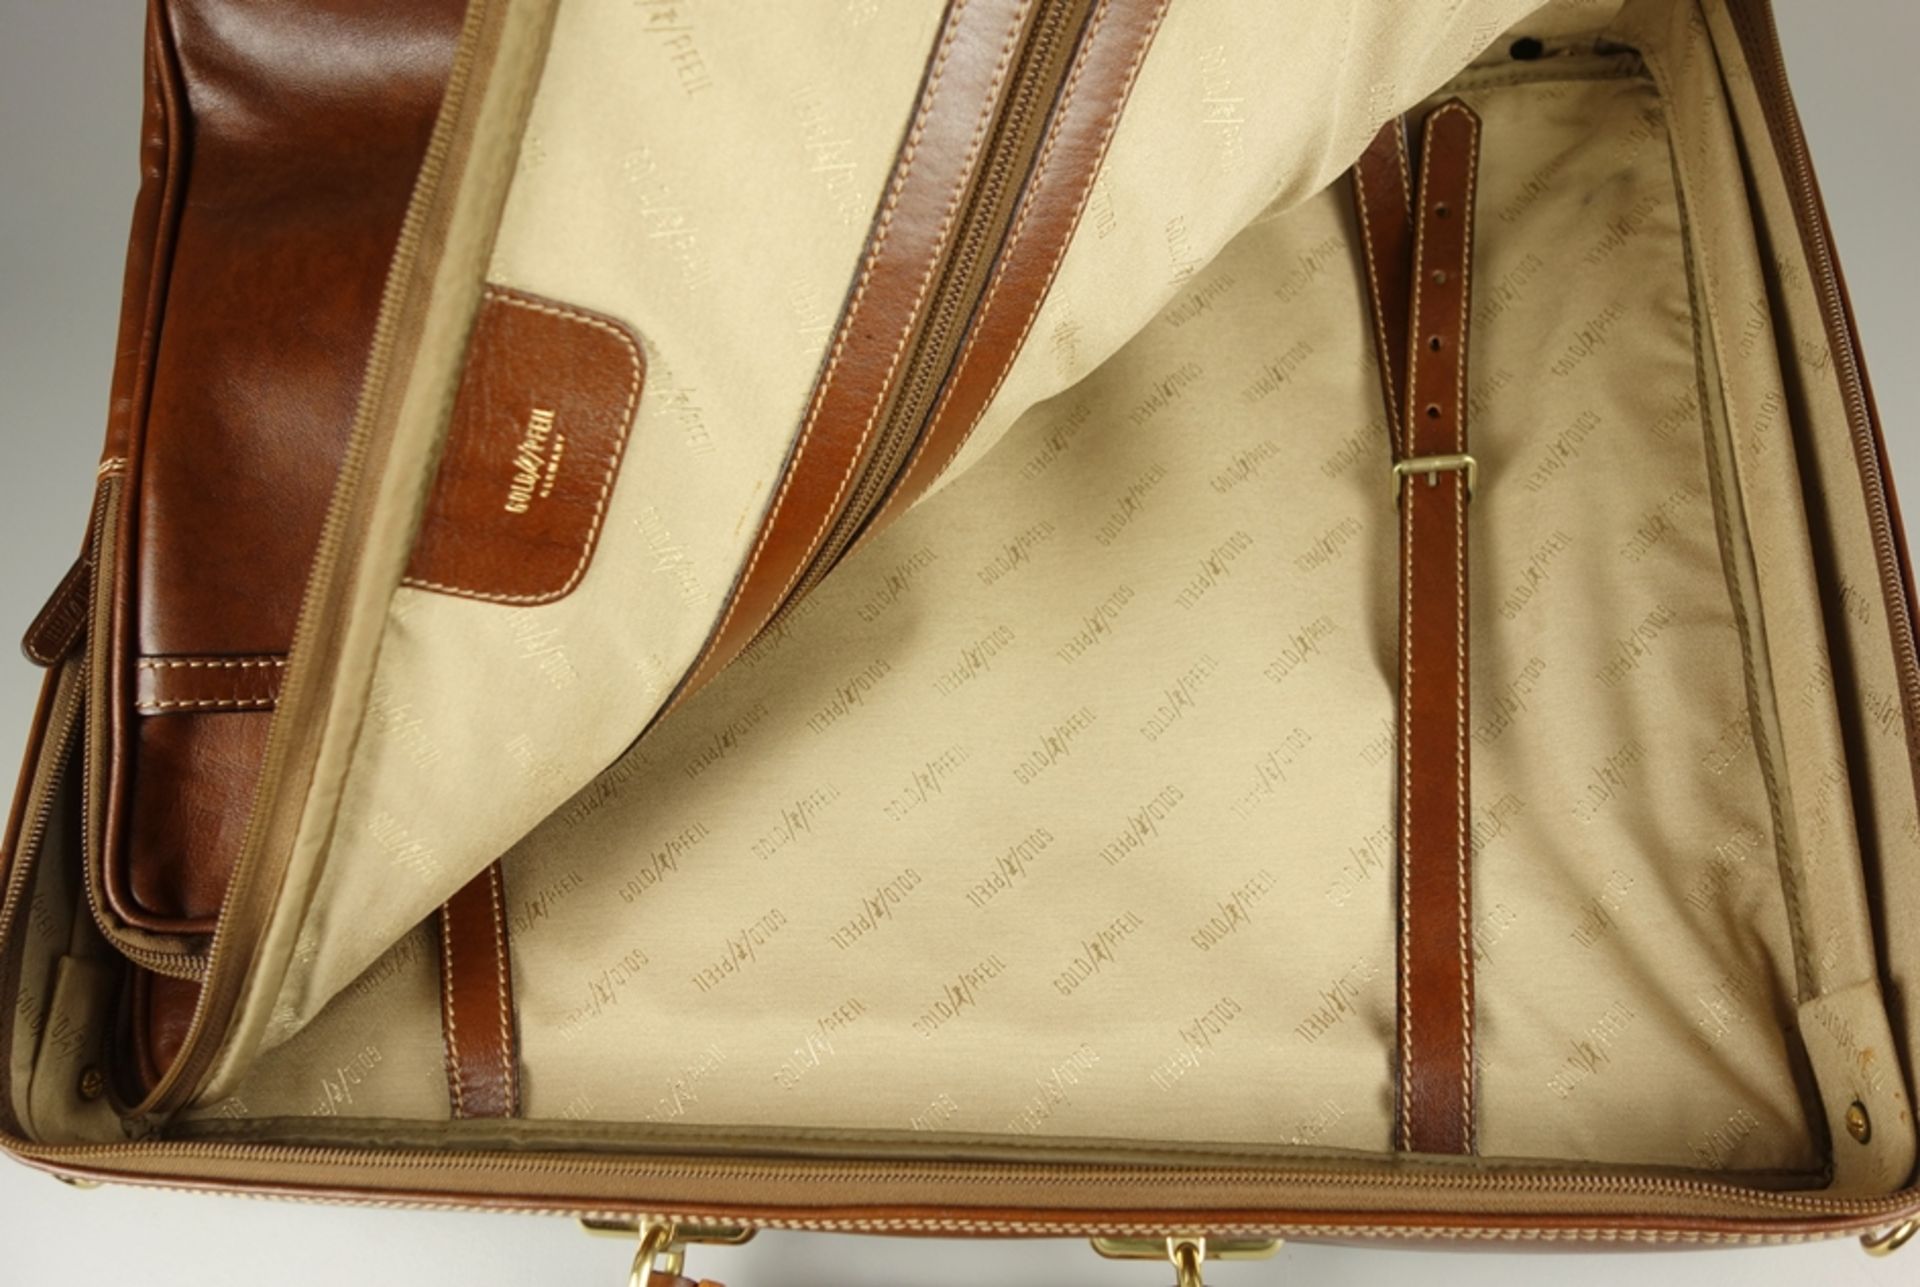 Leather travel bag / weekender, Goldpfeil - Image 3 of 3